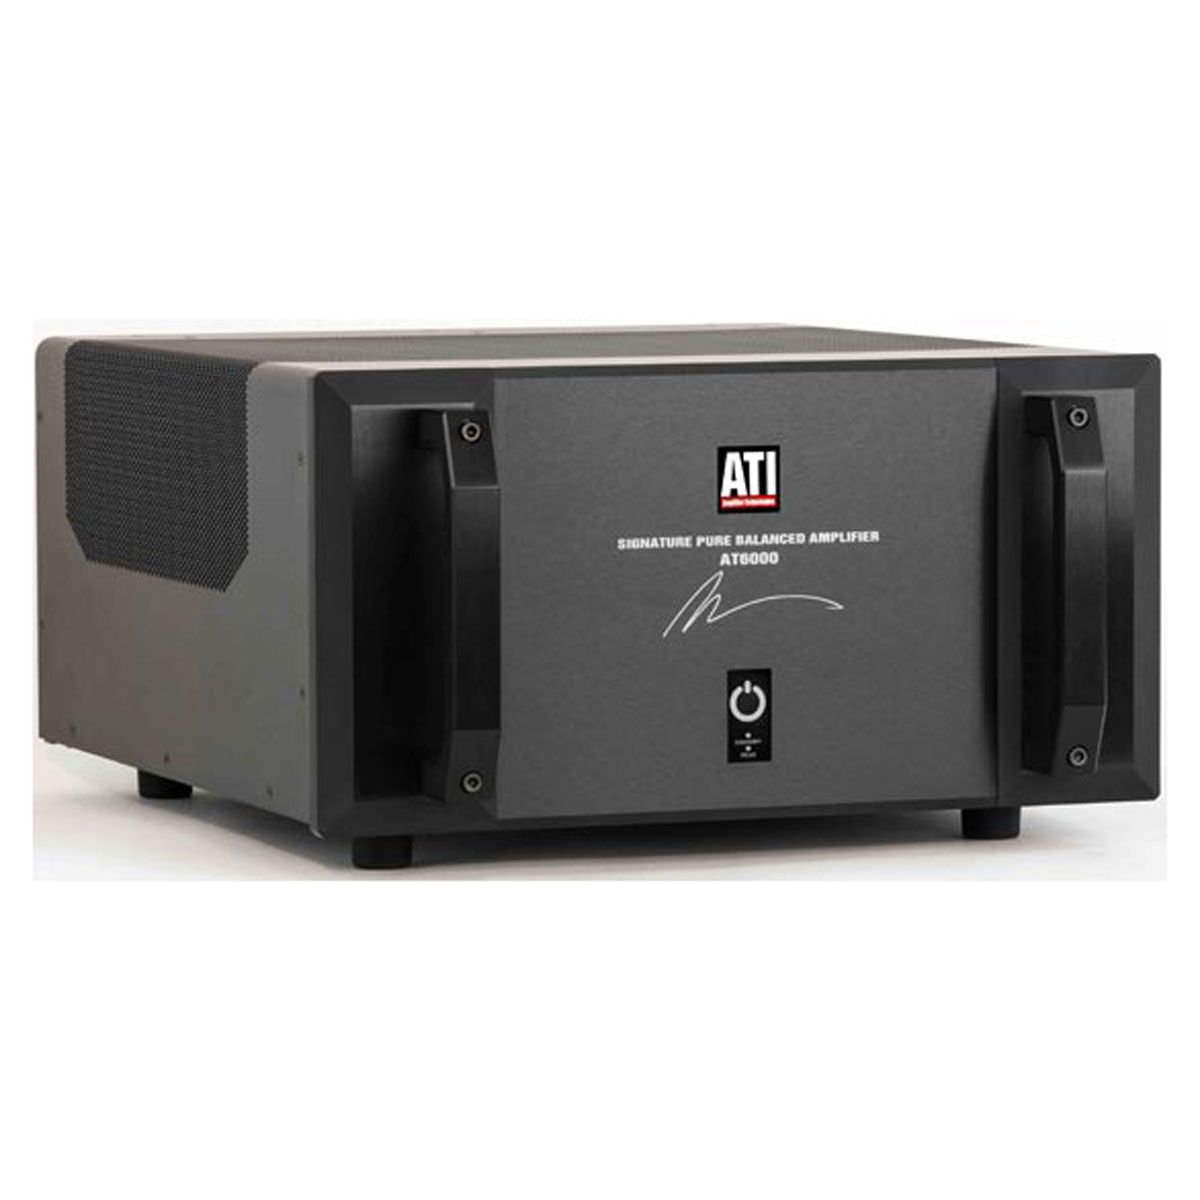 ATI AT6003 - 300W X 3 Amplifier